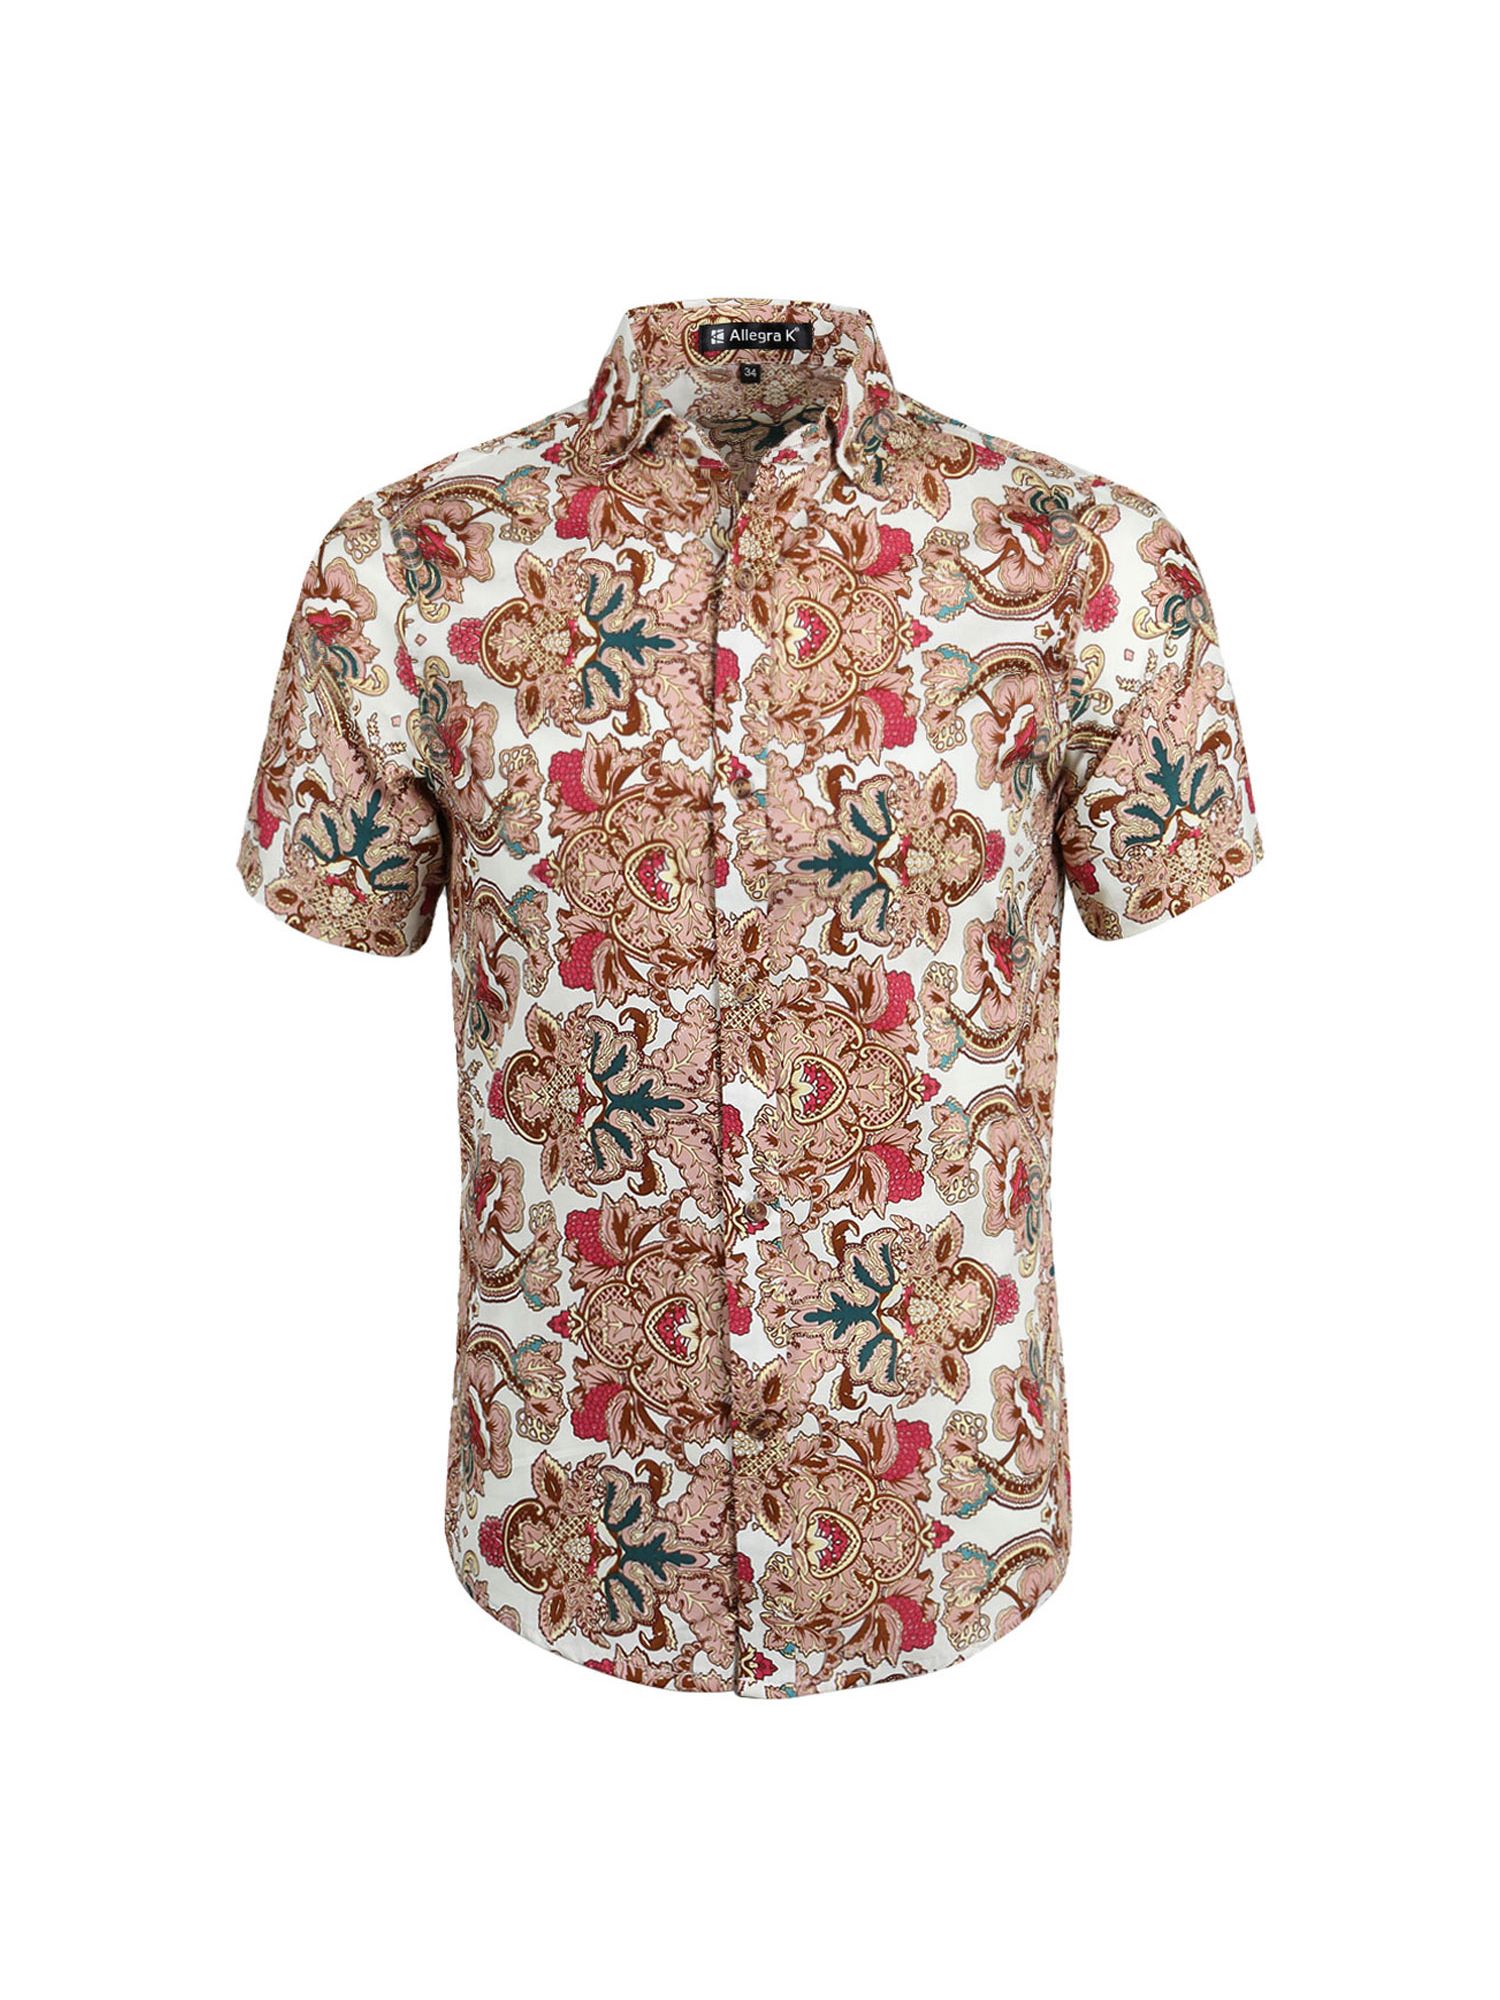 Floral Tan Unique Design Hawaiian Shirt